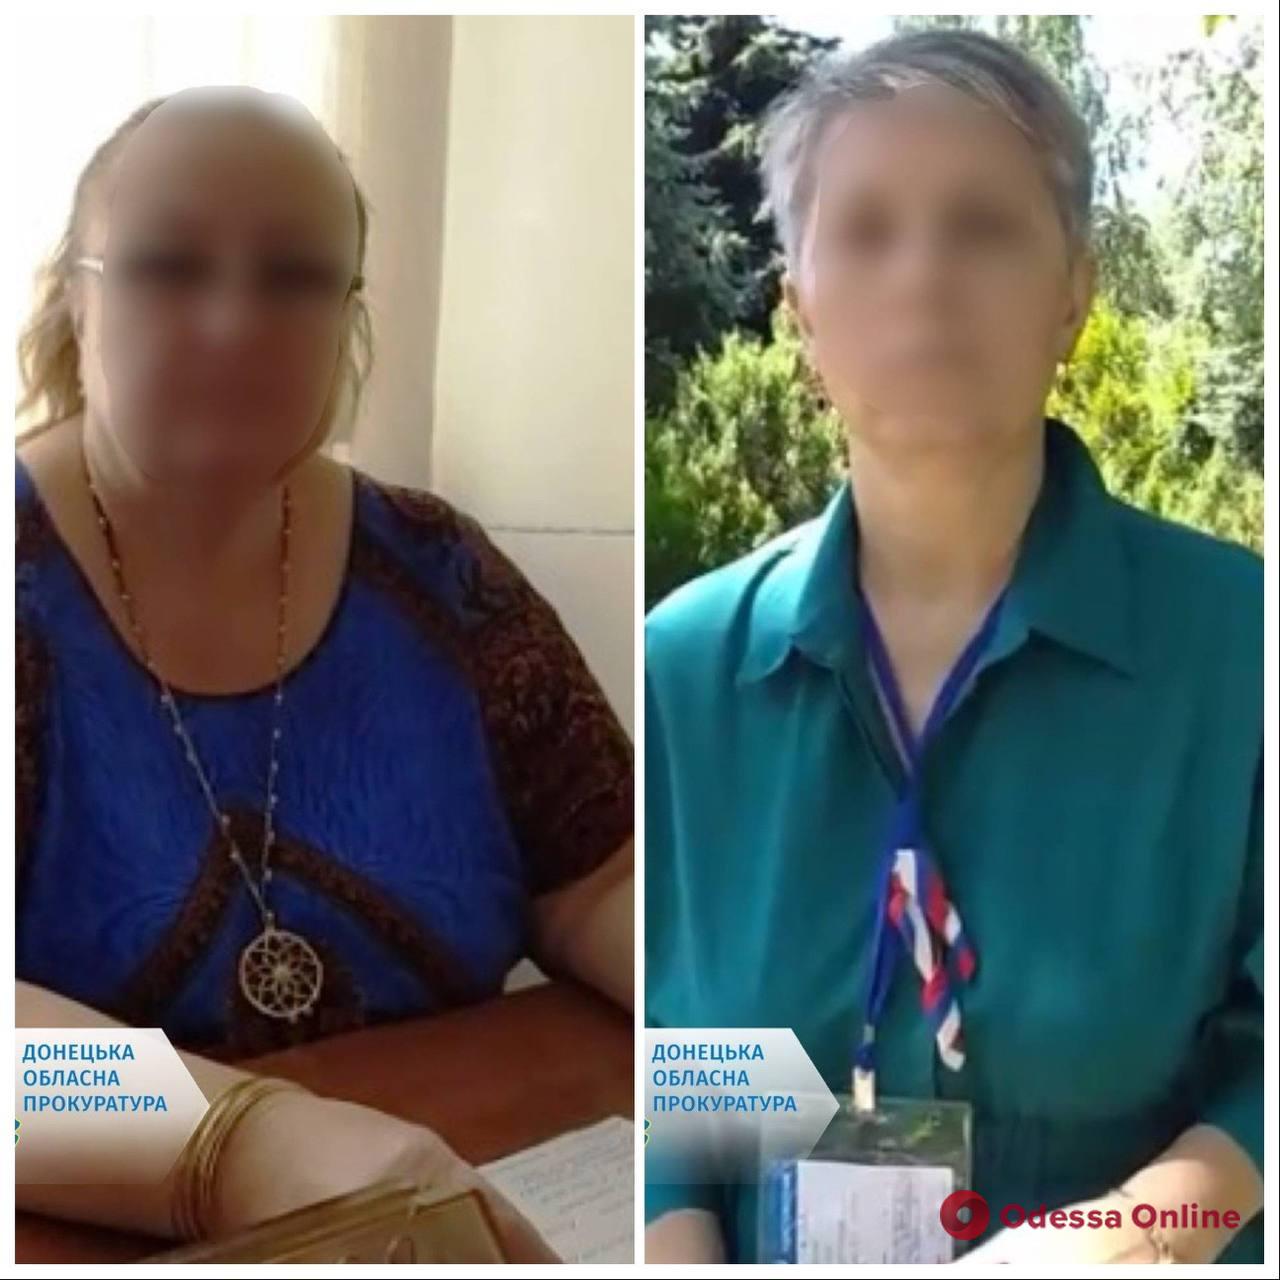 Двум преподавательницам Мариупольского госуниверситета, которые возглавили вуз, сообщили о подозрении